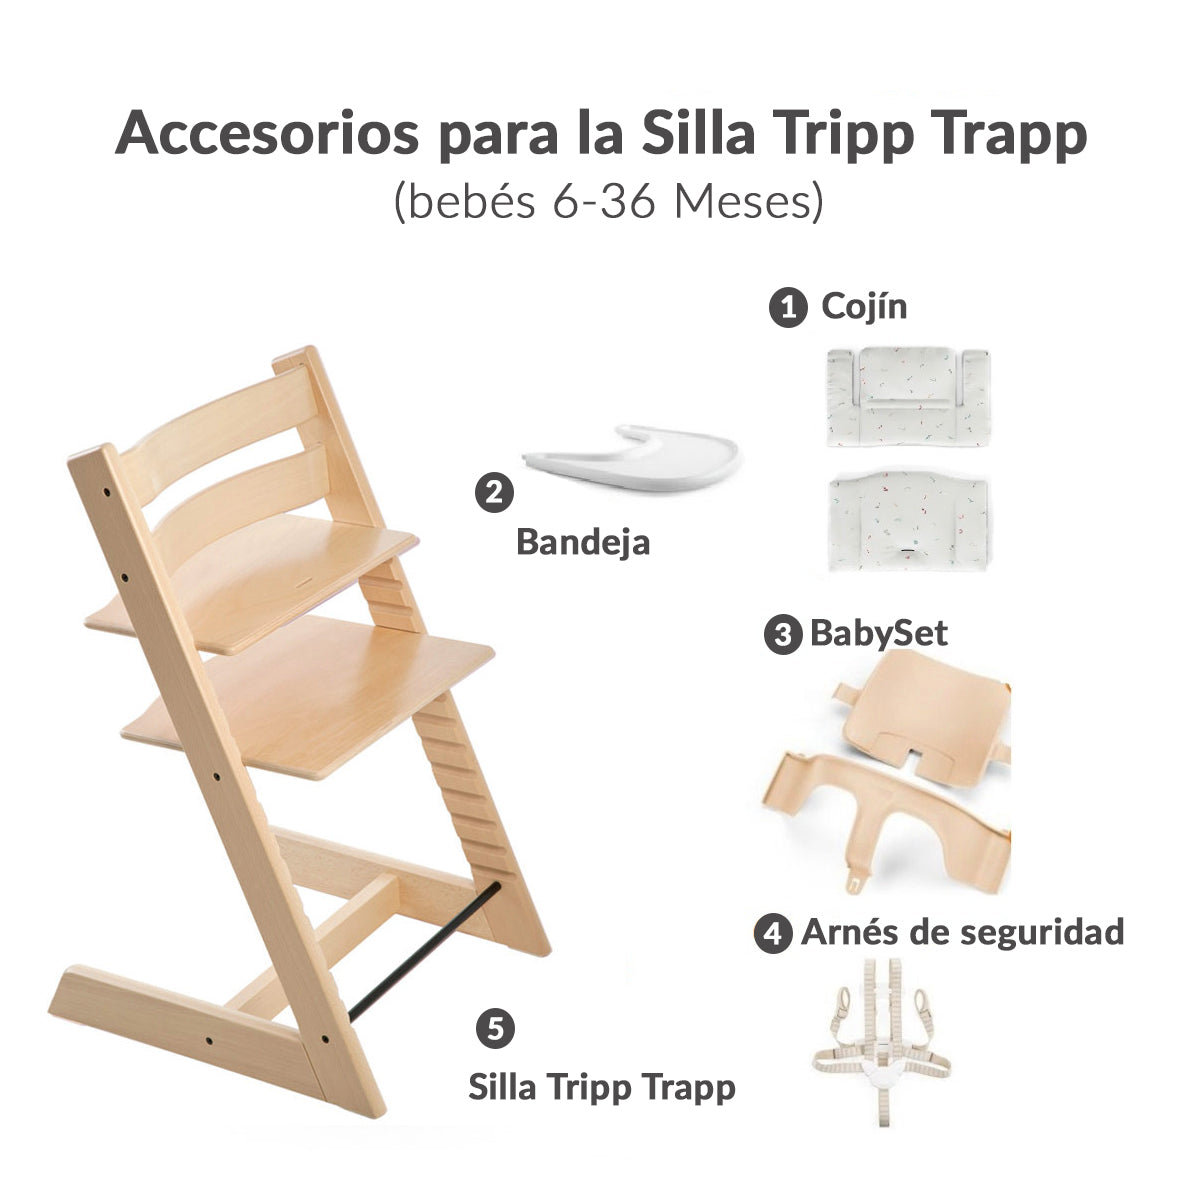  Stokke Tripp Trapp - Cojín clásico, color gris nórdico, par con  silla Tripp Trapp y silla alta para apoyo y comodidad, lavable a máquina,  se adapta a todas las sillas Tripp